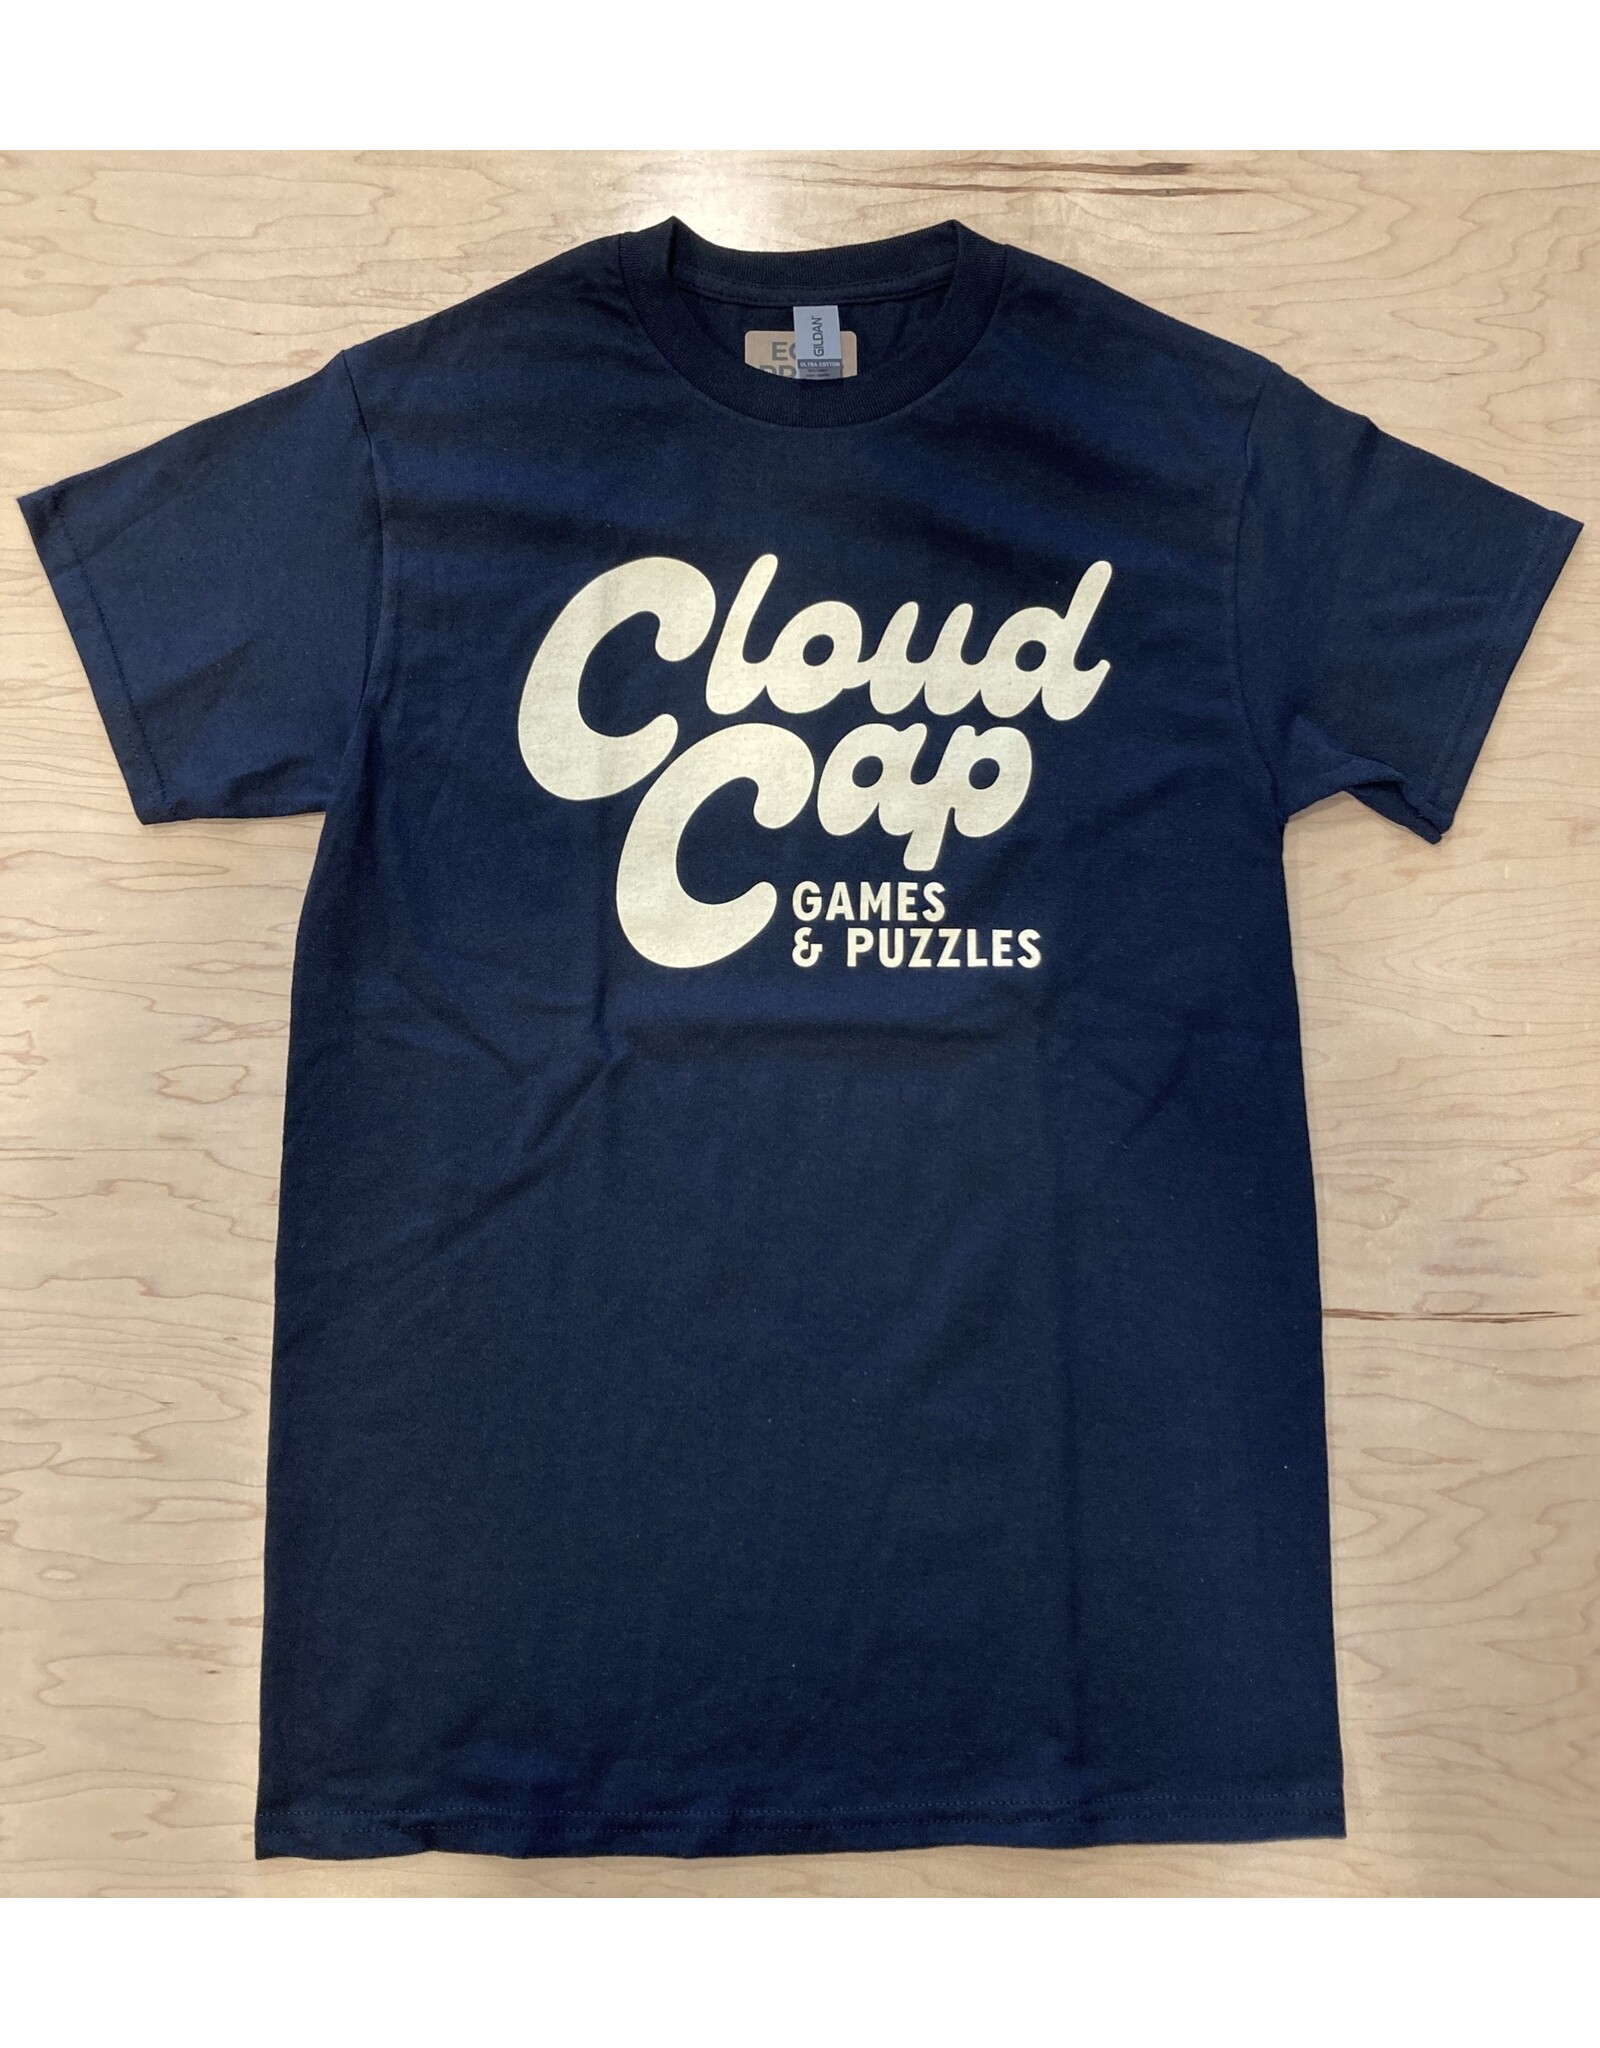 T-Shirt - Cloud Cap Logo - Black  - L